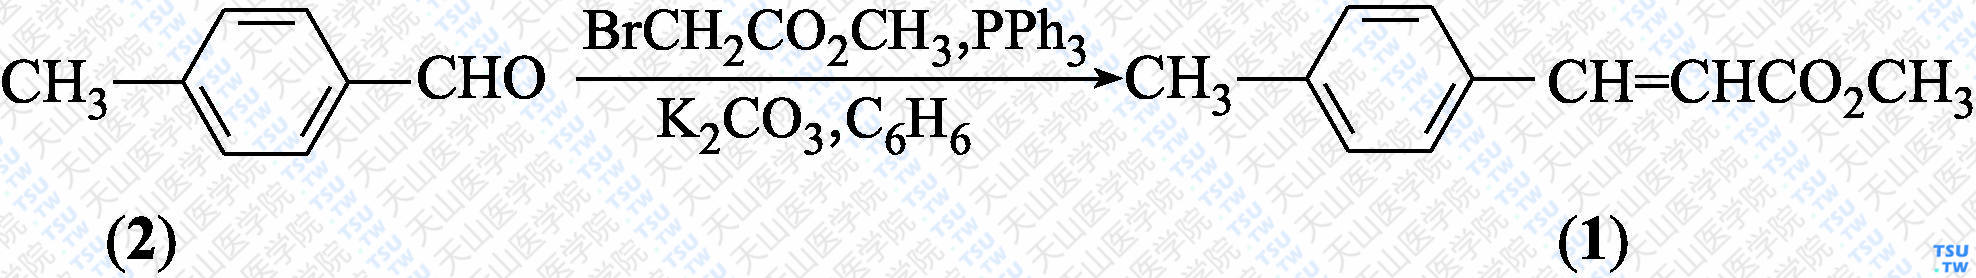 4-甲基肉桂酸甲酯（分子式：C<sub>11</sub>H<sub>12</sub>O<sub>2</sub>）的合成方法路线及其结构式